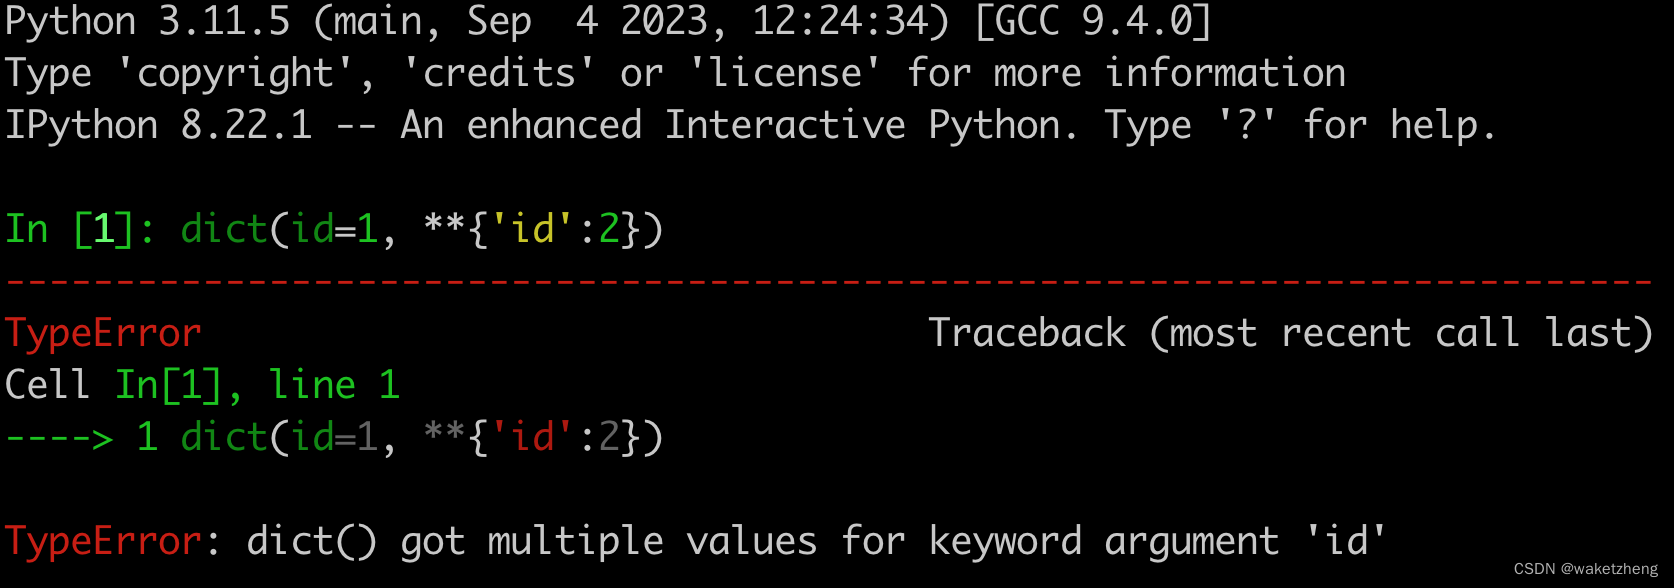 偶然发现了Python的一个BUG。。。